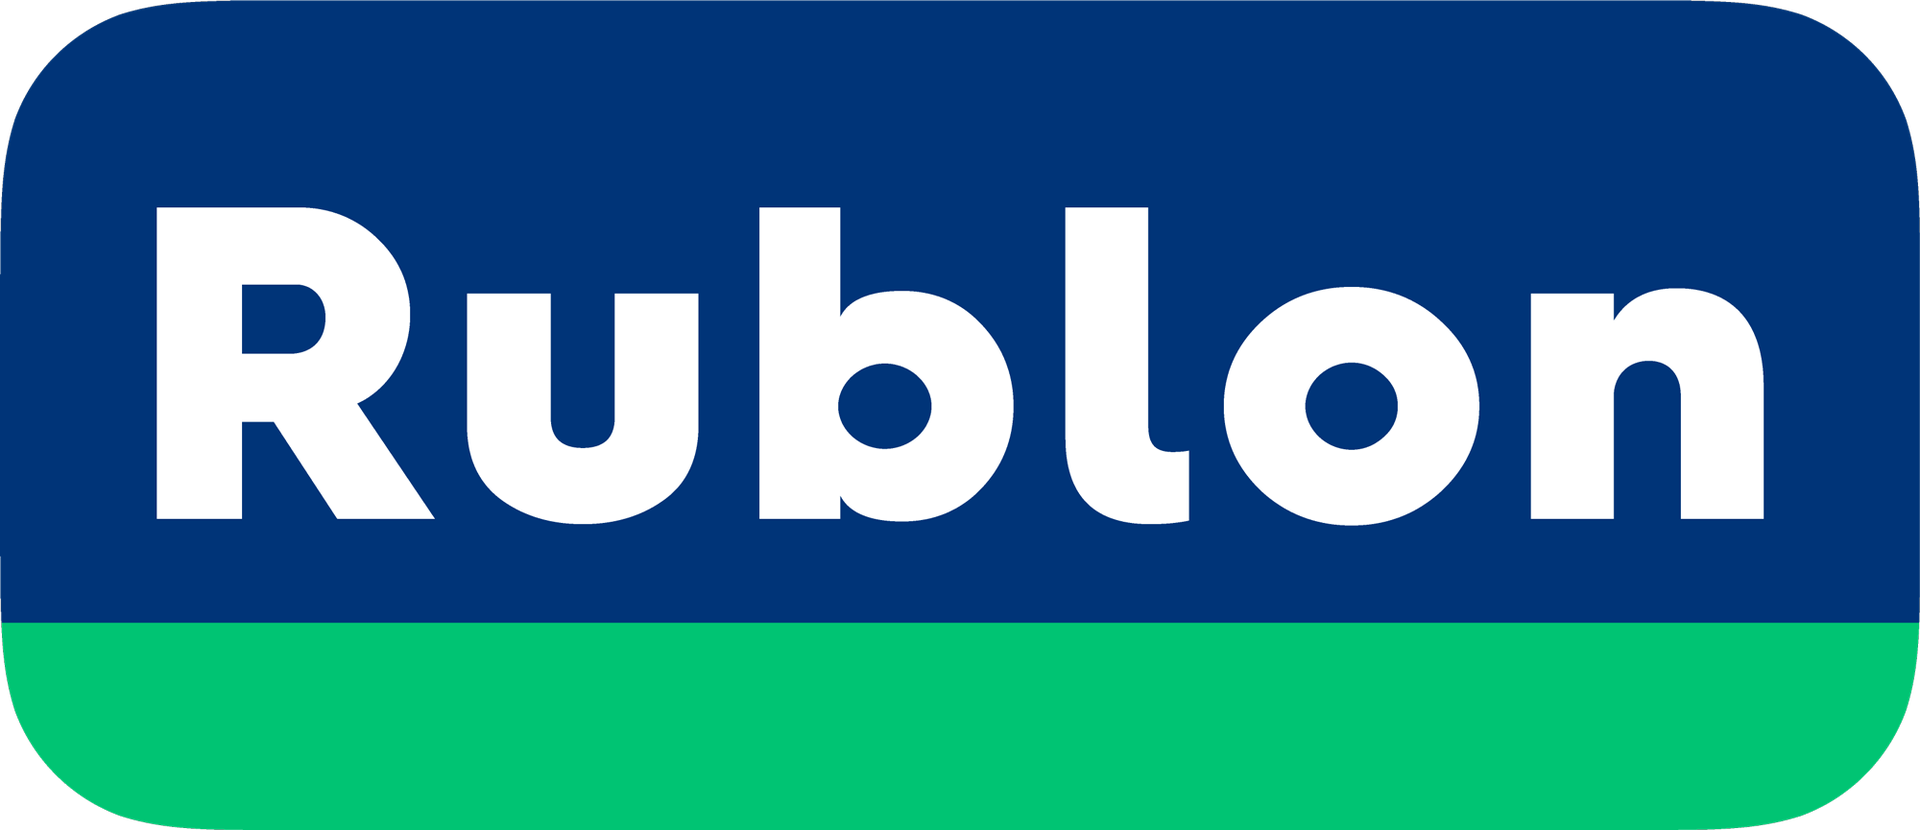 rublon-logo-2000x865.png